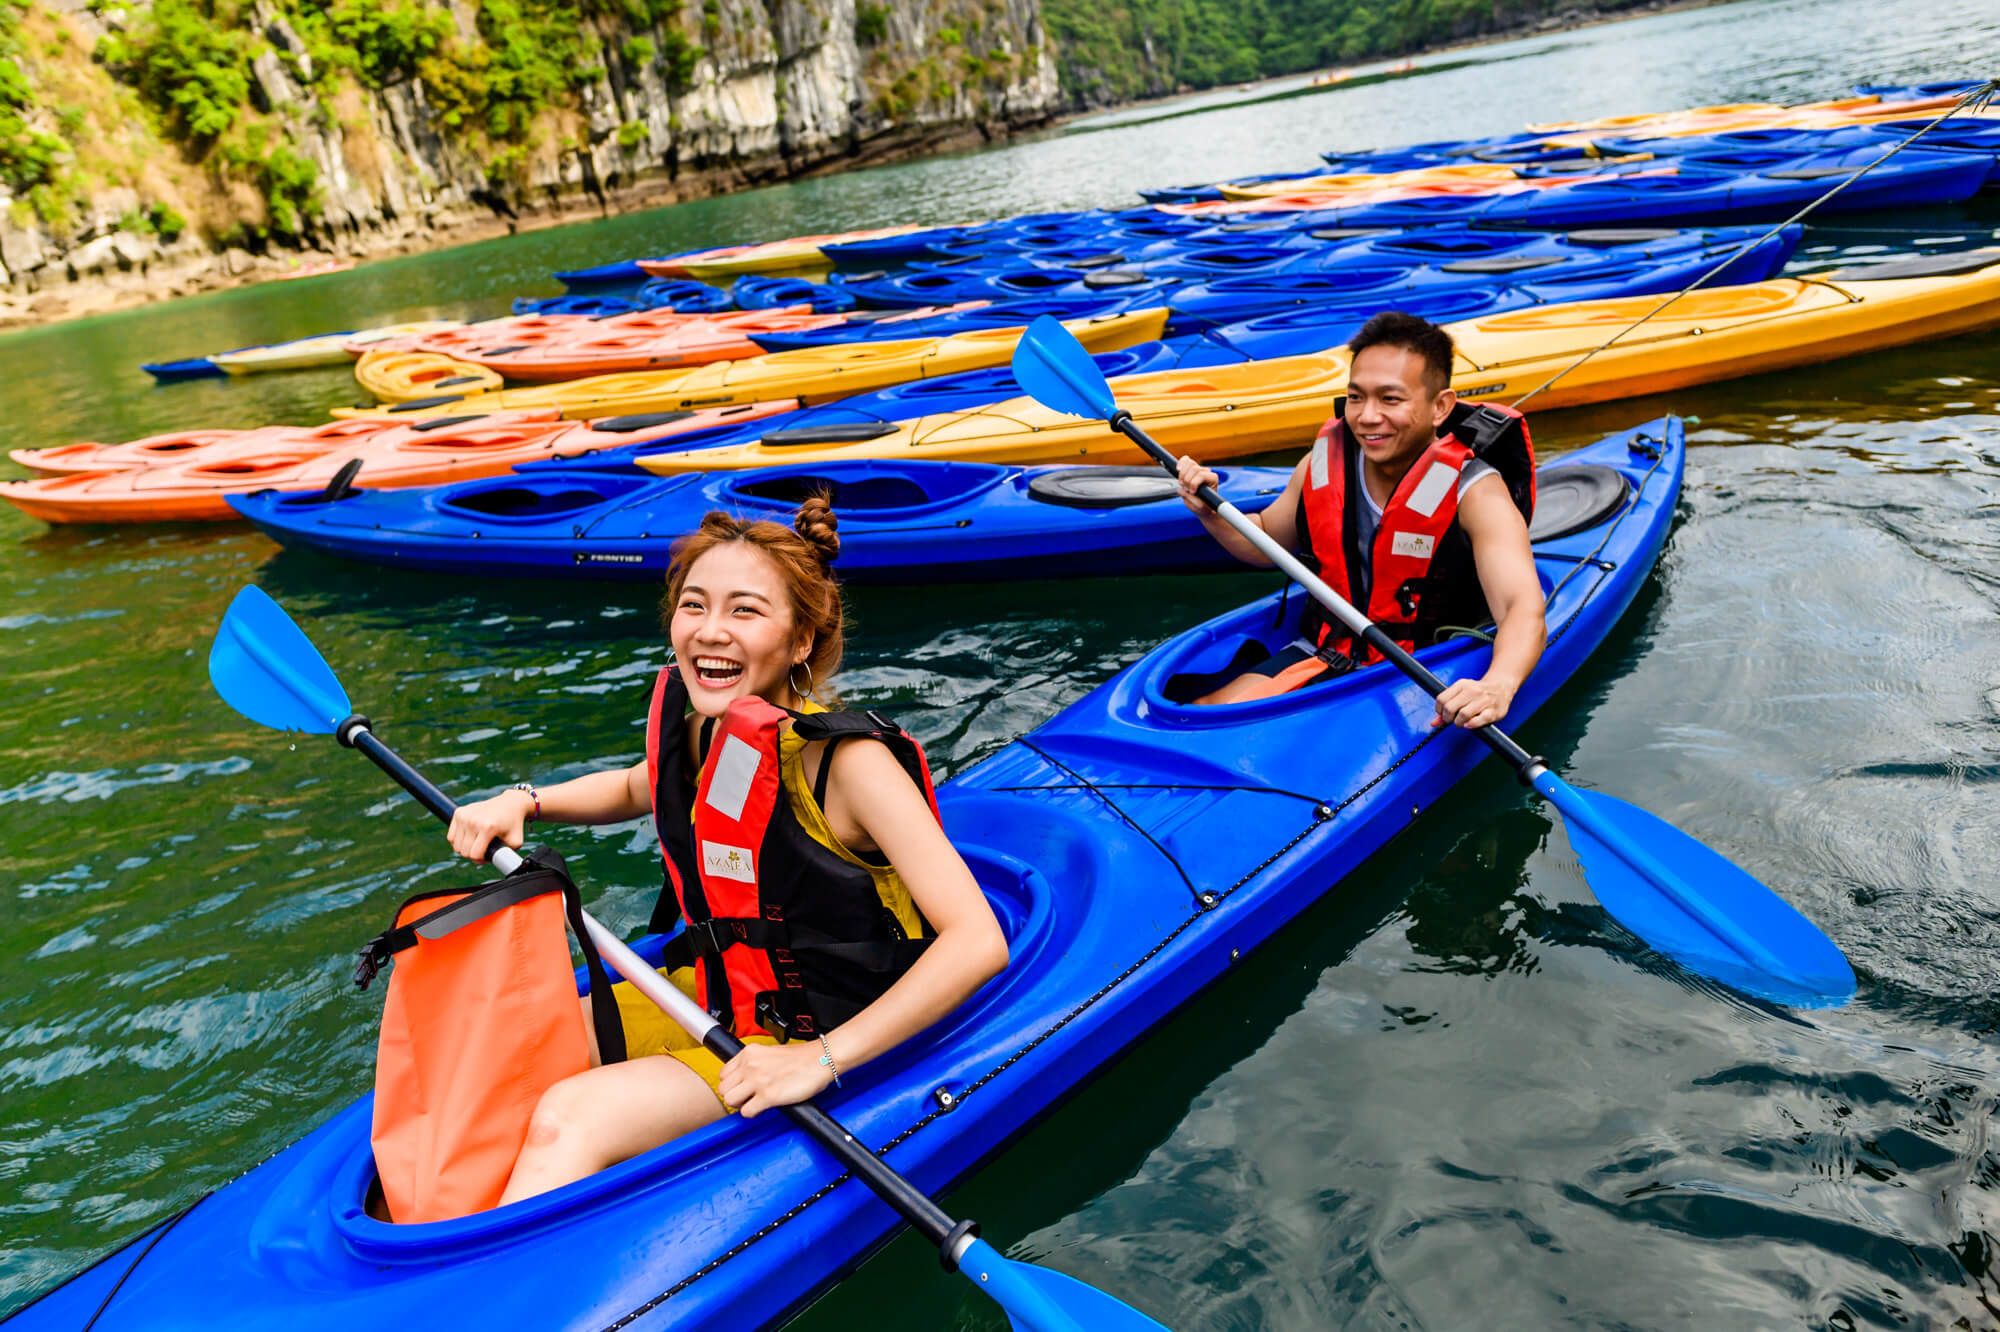 Kayaking in Halong